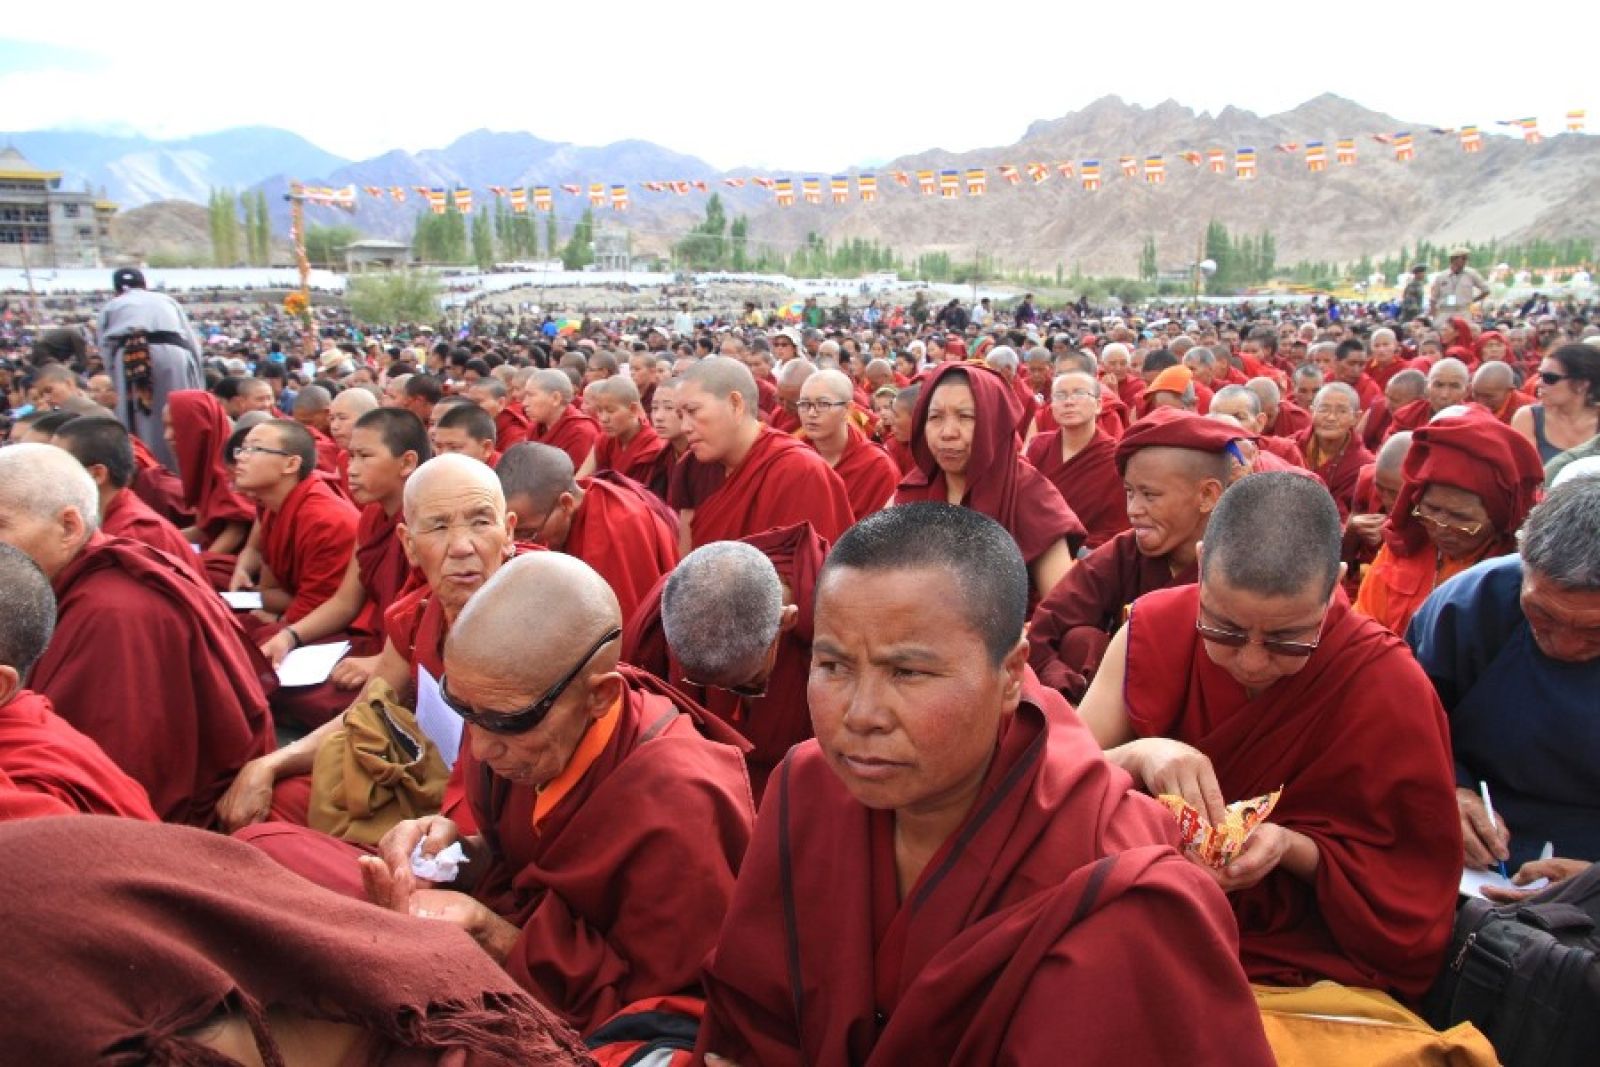 Audienz beim Dalai Lama zusammen mit Hunderten Mönchen